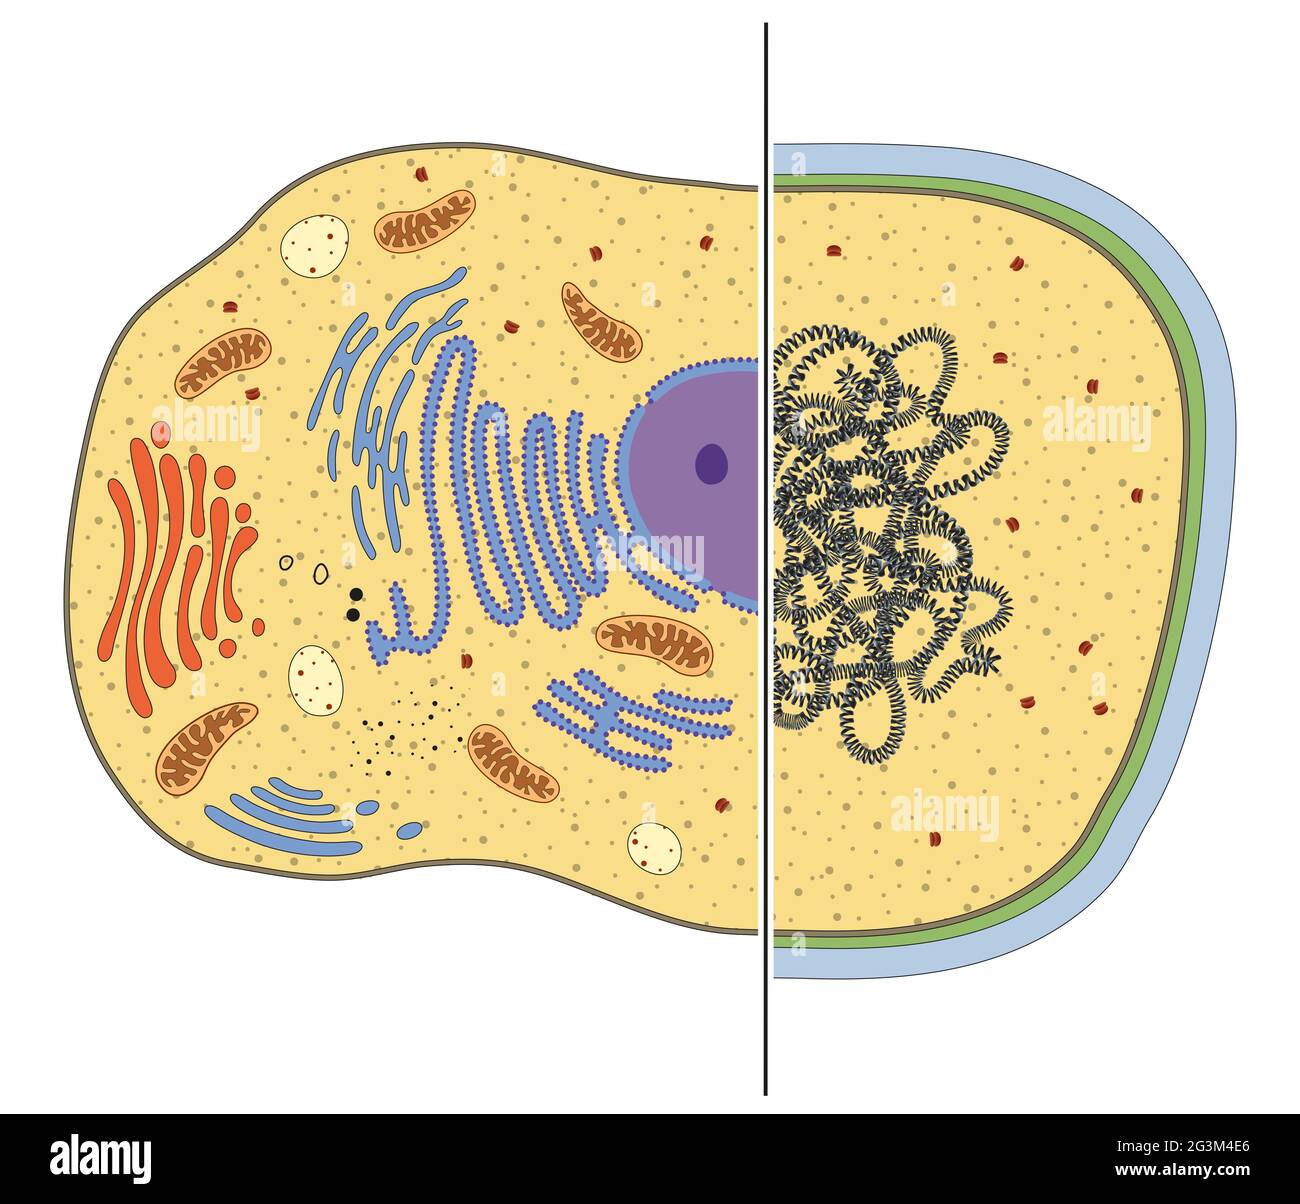 Ilustración de células eucariotas y procariotas. Diferencias Foto de stock